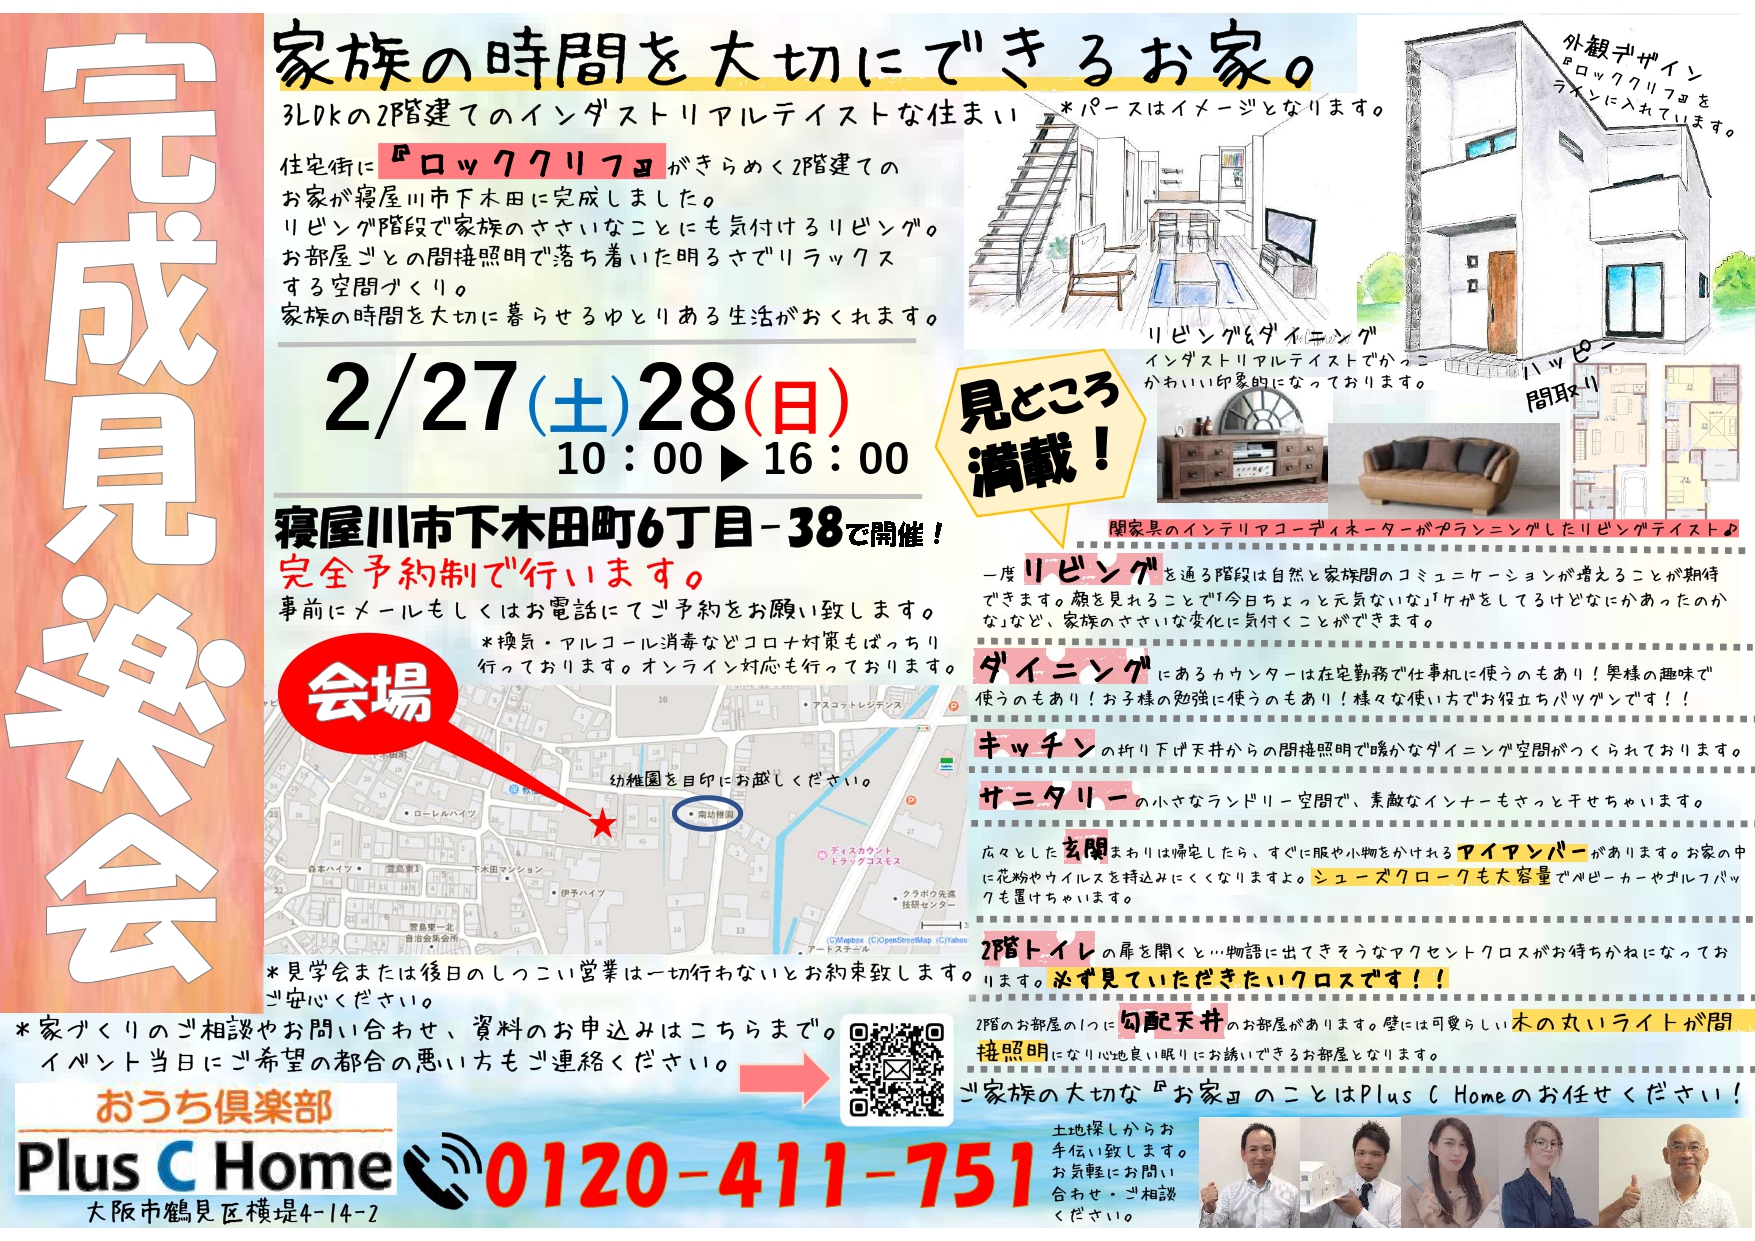 大阪市鶴見区で高断熱・高気密住宅を建てております工務店Plus C Homeが寝屋川市下木田町で完成見学会を開催します♪